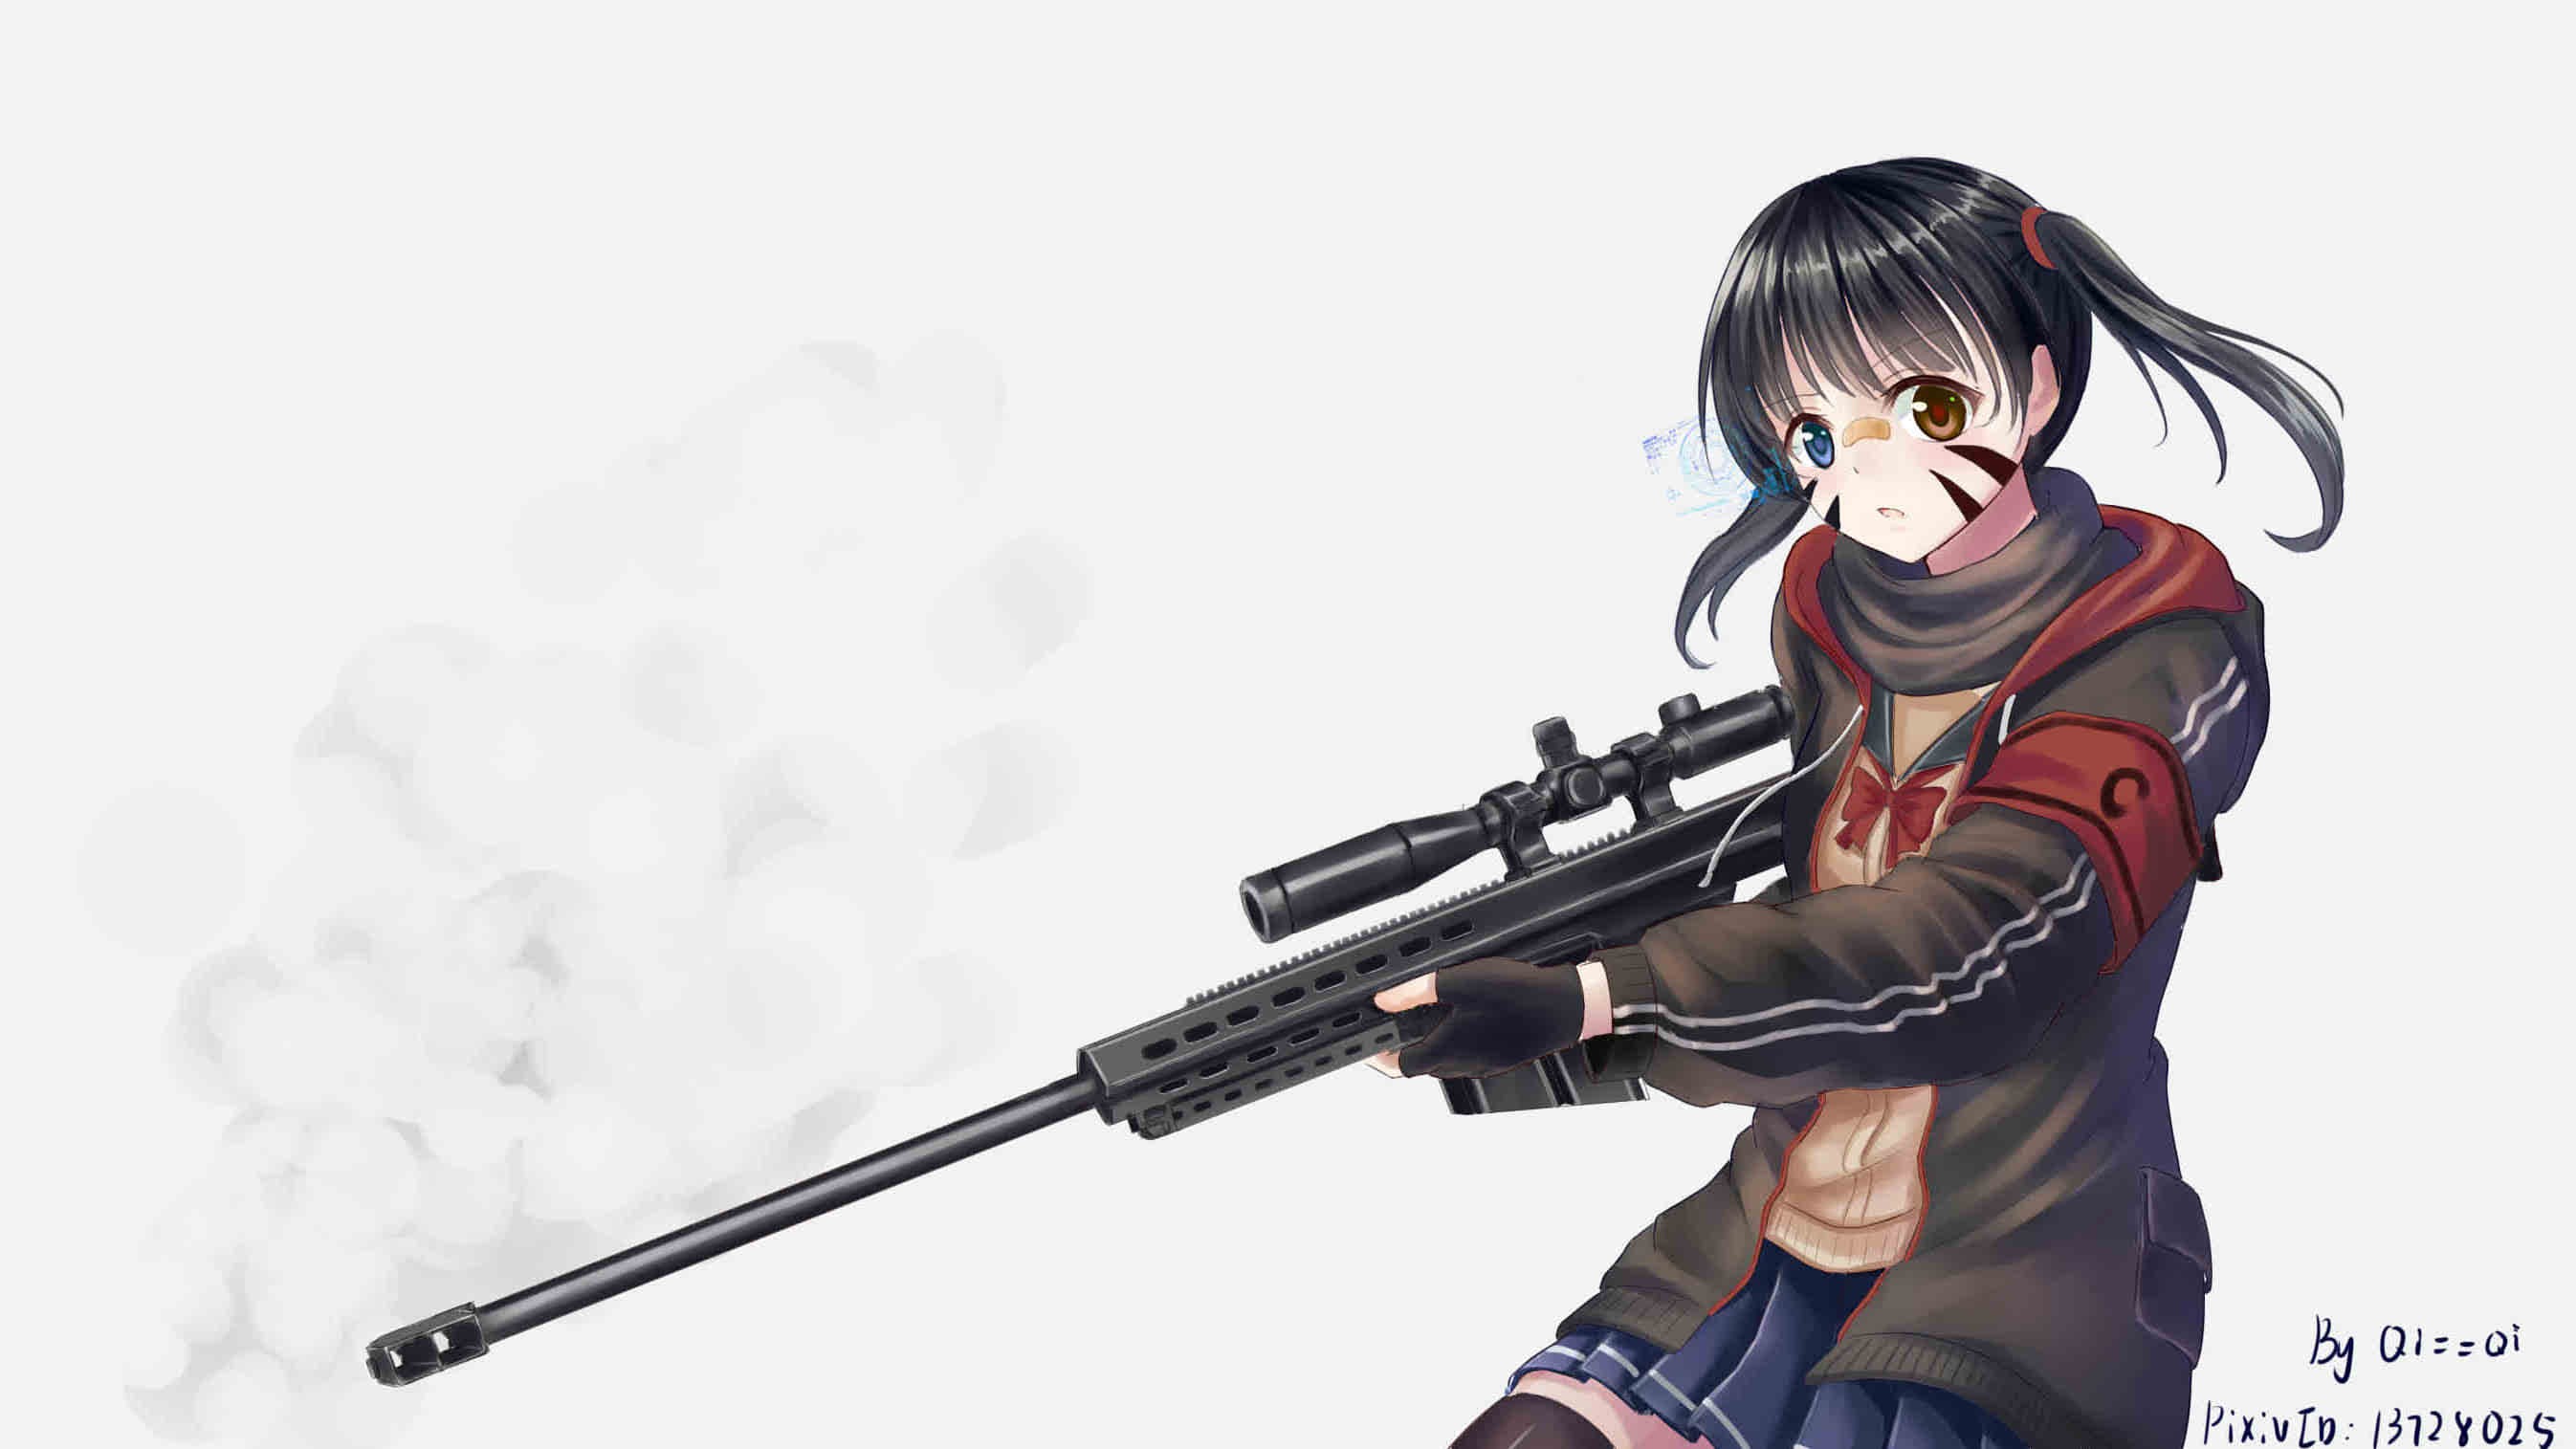 Anime Anime Girls Short Hair Twintails Black Hair Weapon Gun Sniper Rifle Skirt Hologram Heterochrom 2693x1515